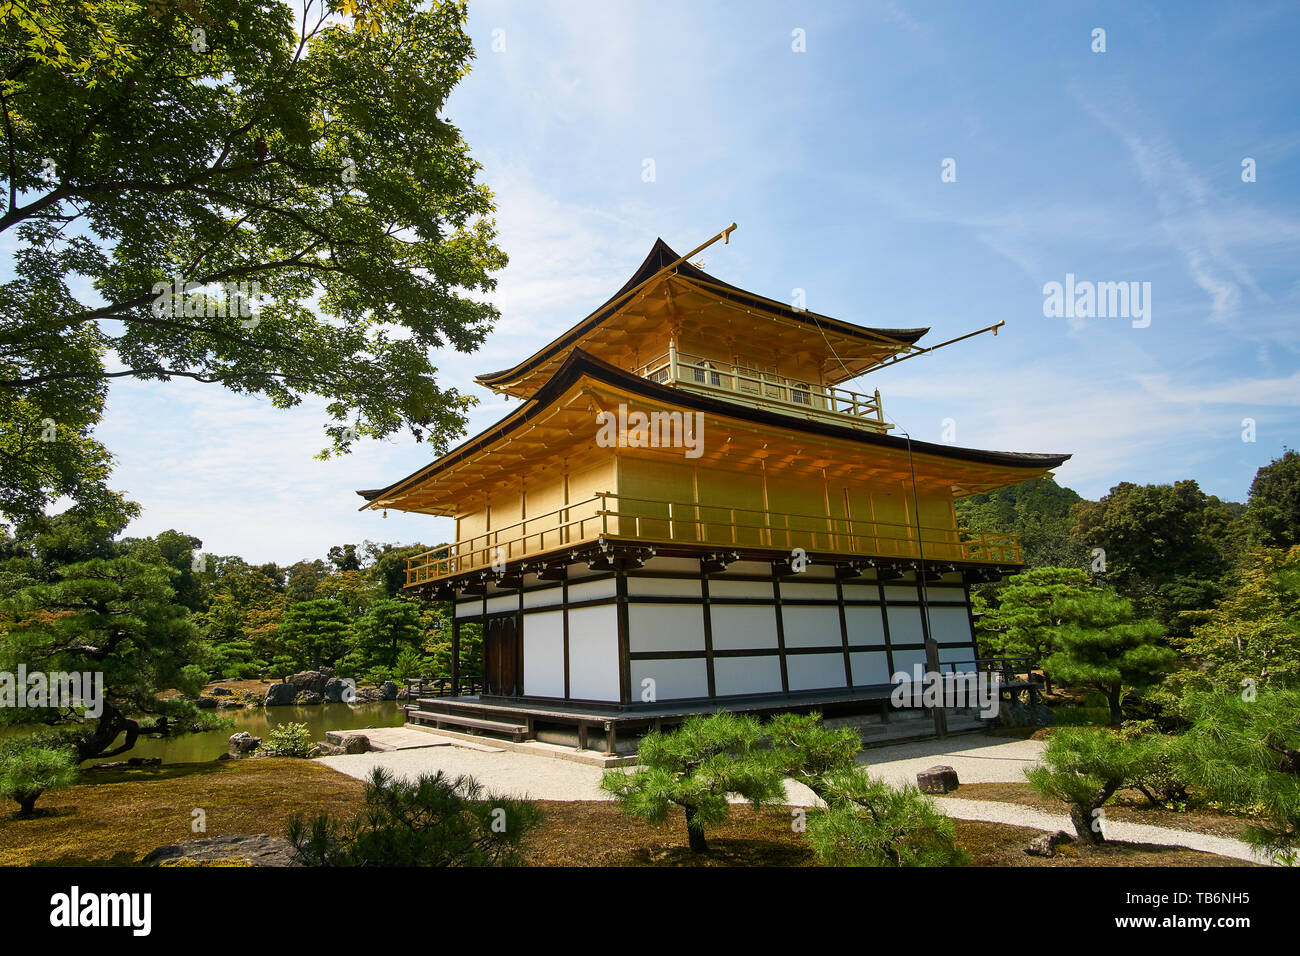 (Kinkakuji padiglione d'oro) è visto dal retro, circondato da alberi e da uno splendido paesaggio, su una chiara, soleggiate giornate estive a Kyoto, in Giappone. Foto Stock